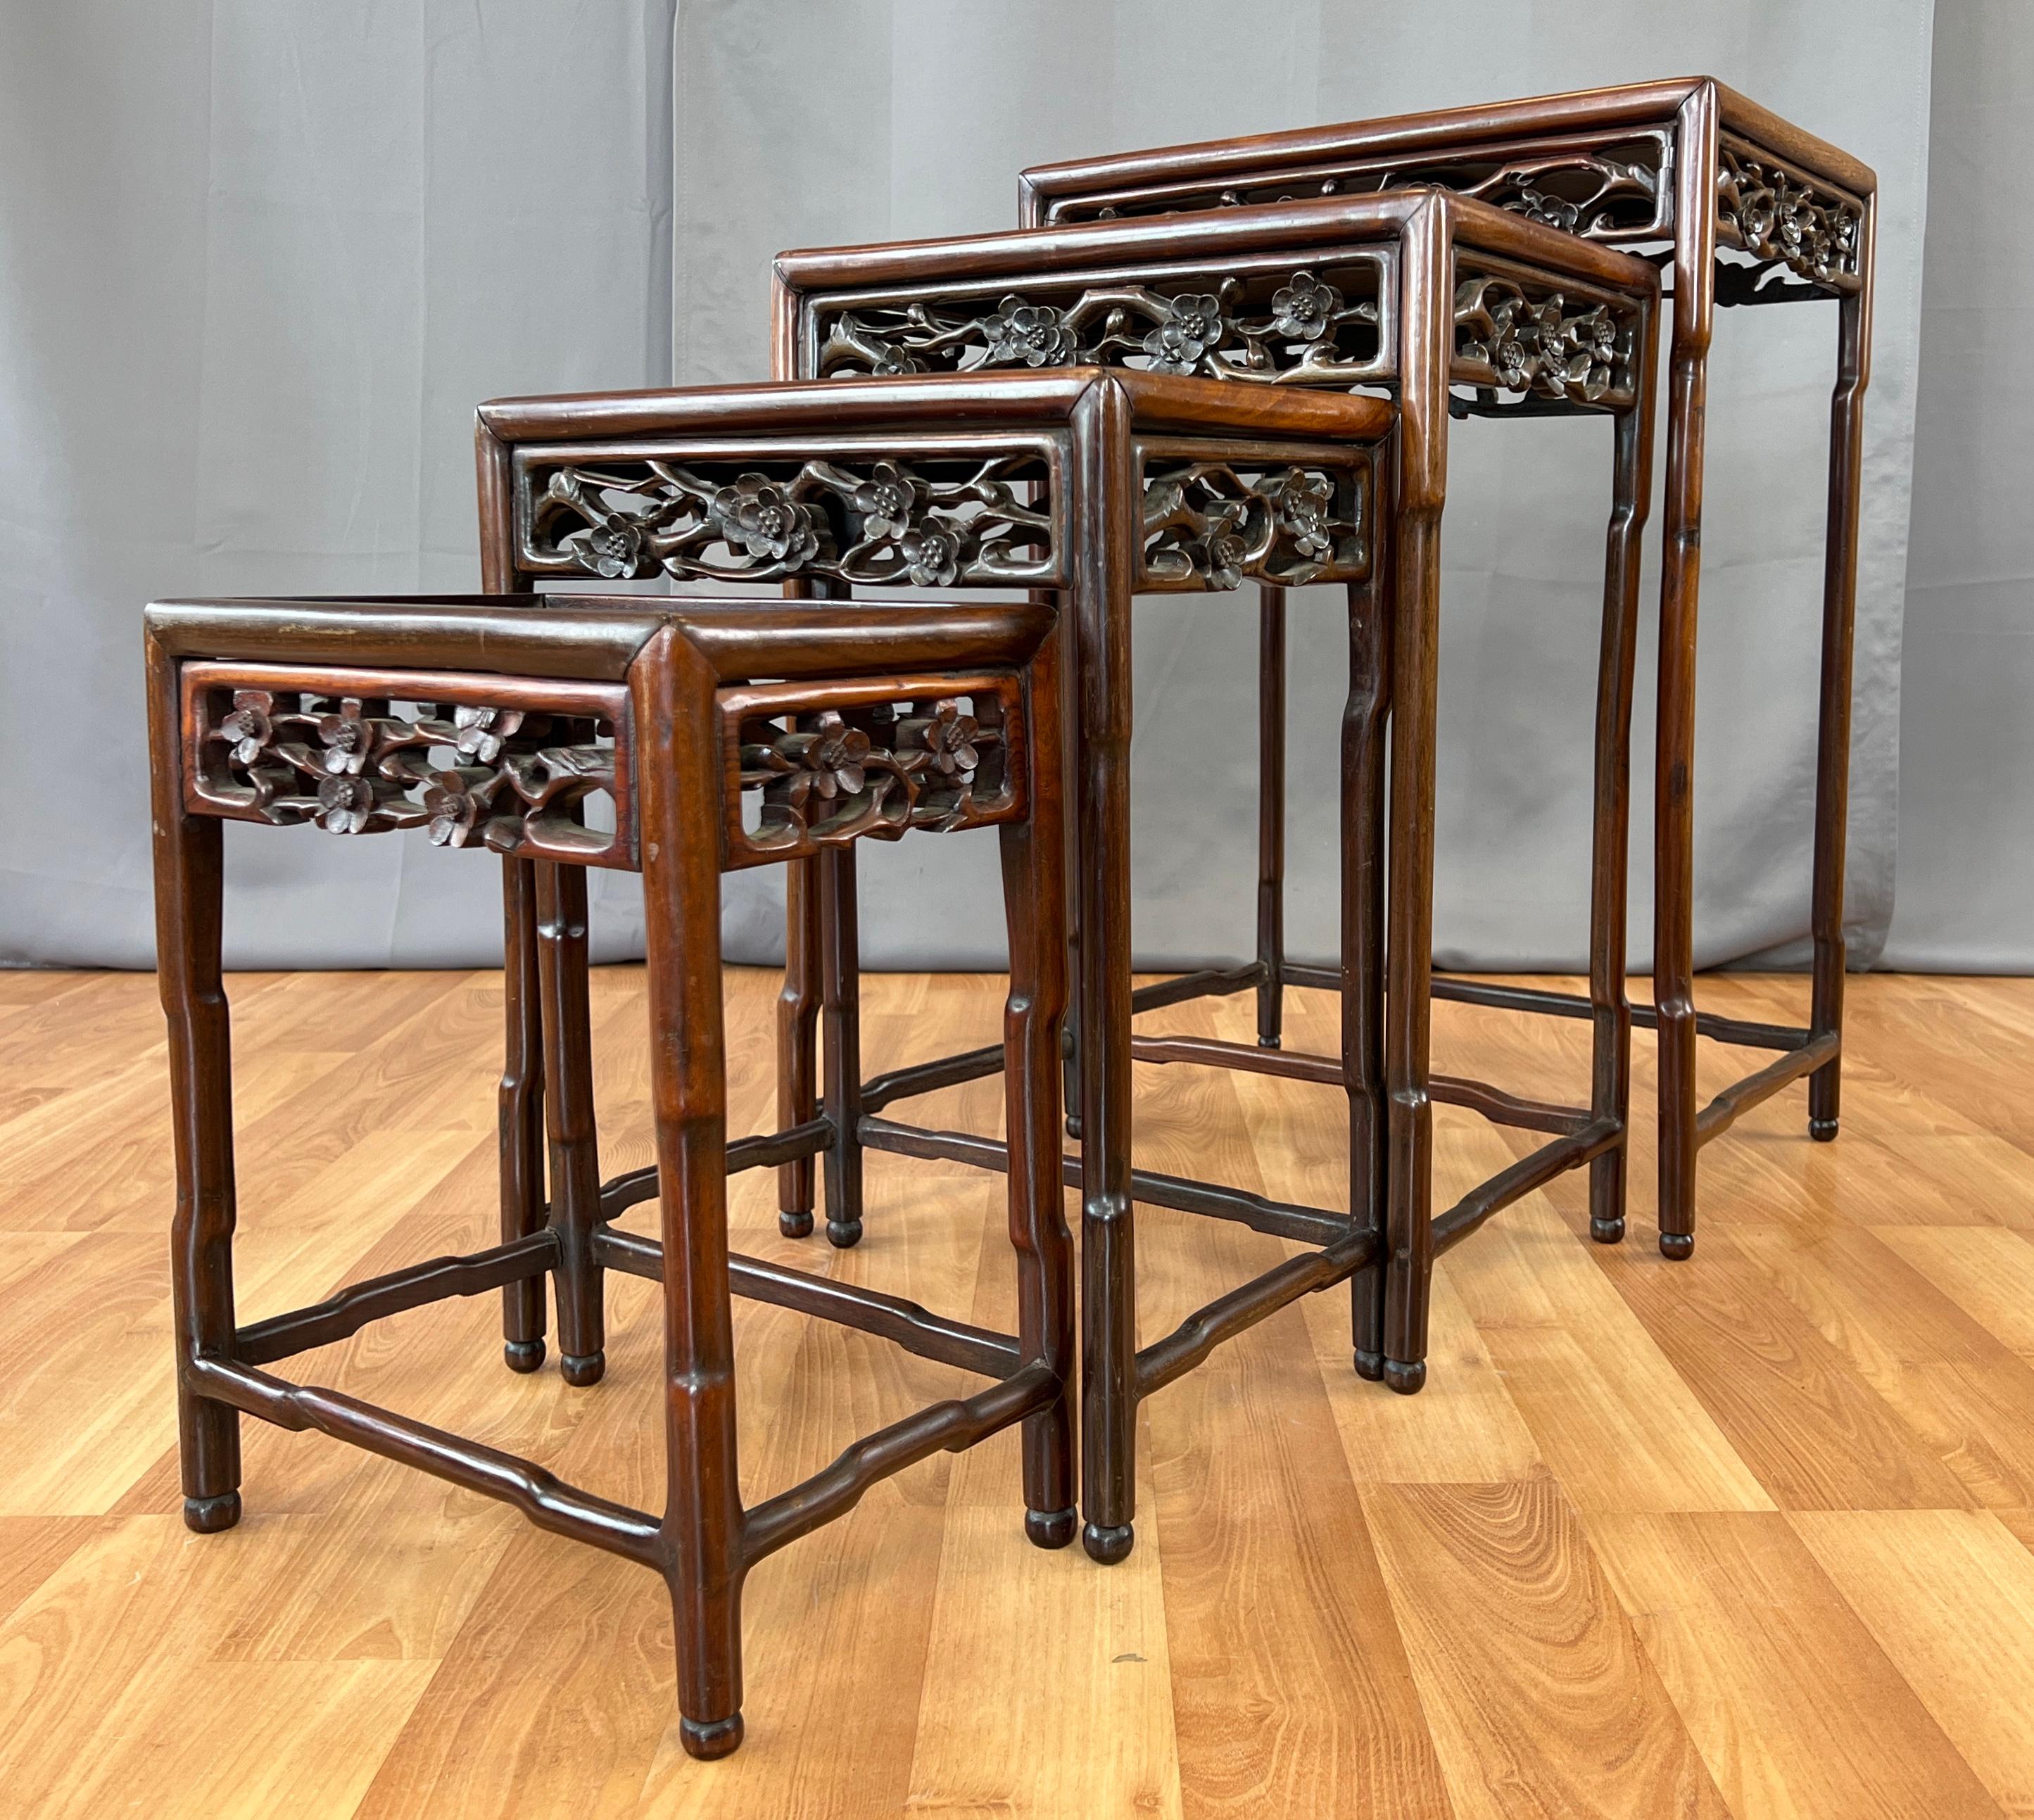 Nous proposons ici un ensemble de quatre tables gigognes chinoises en bois de Zitan datant de la fin du XIXe siècle ou du début du XXe siècle.
Les pieds sculptés et façonnés, ainsi que leurs traverses, se relèvent pour accueillir le panneau du